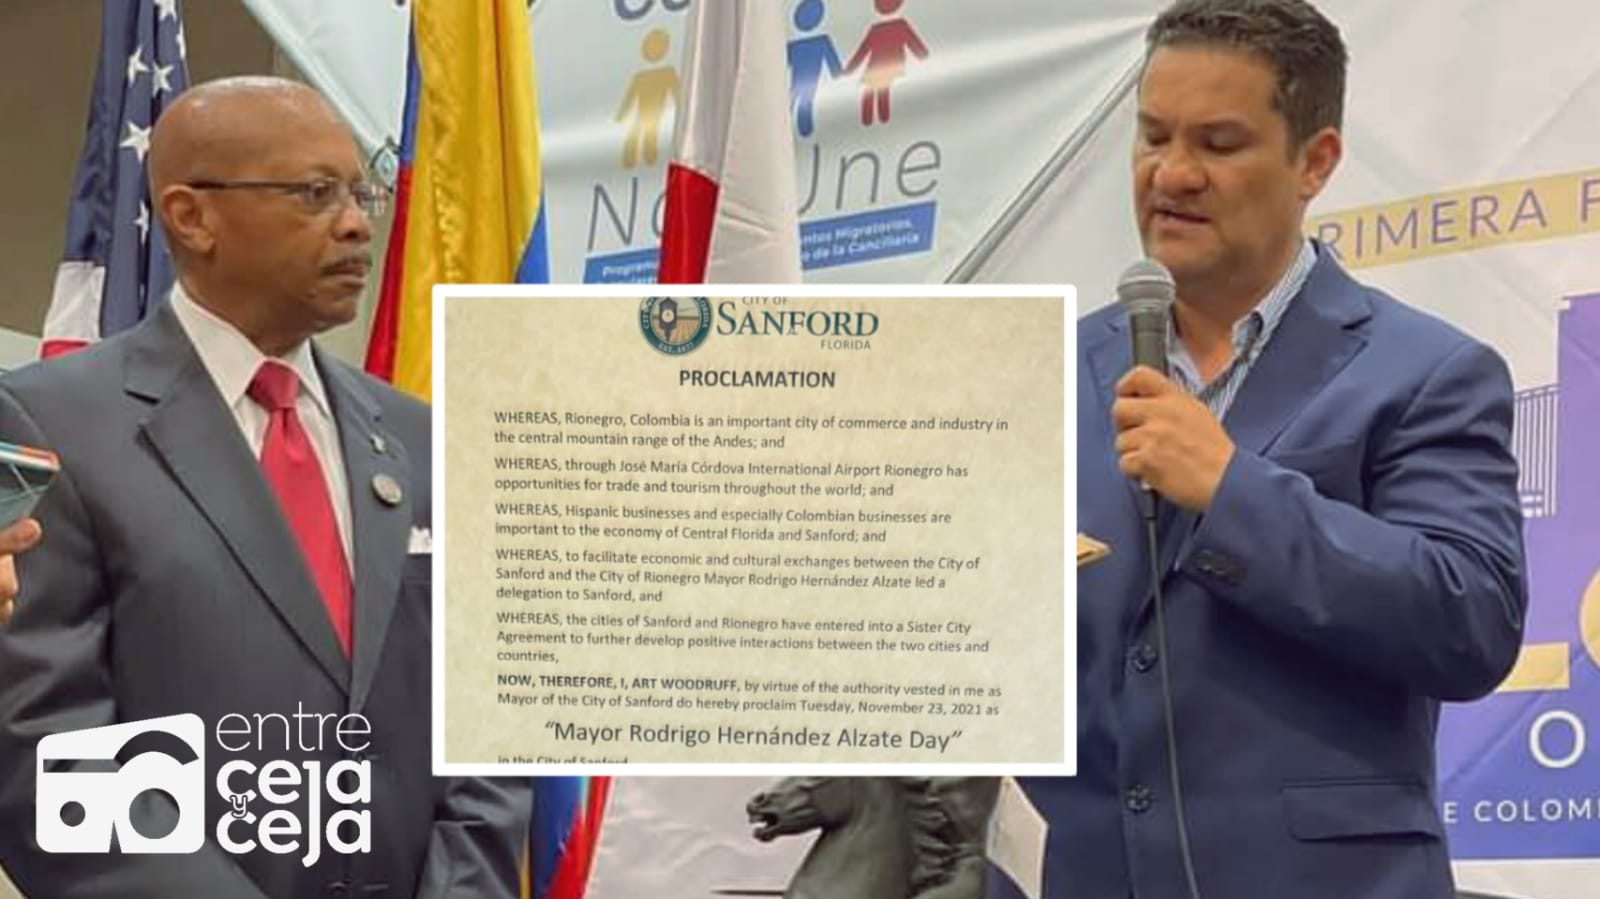 En Estados Unidos se celebrará cada año el día del alcalde Rodrigo Hernández.